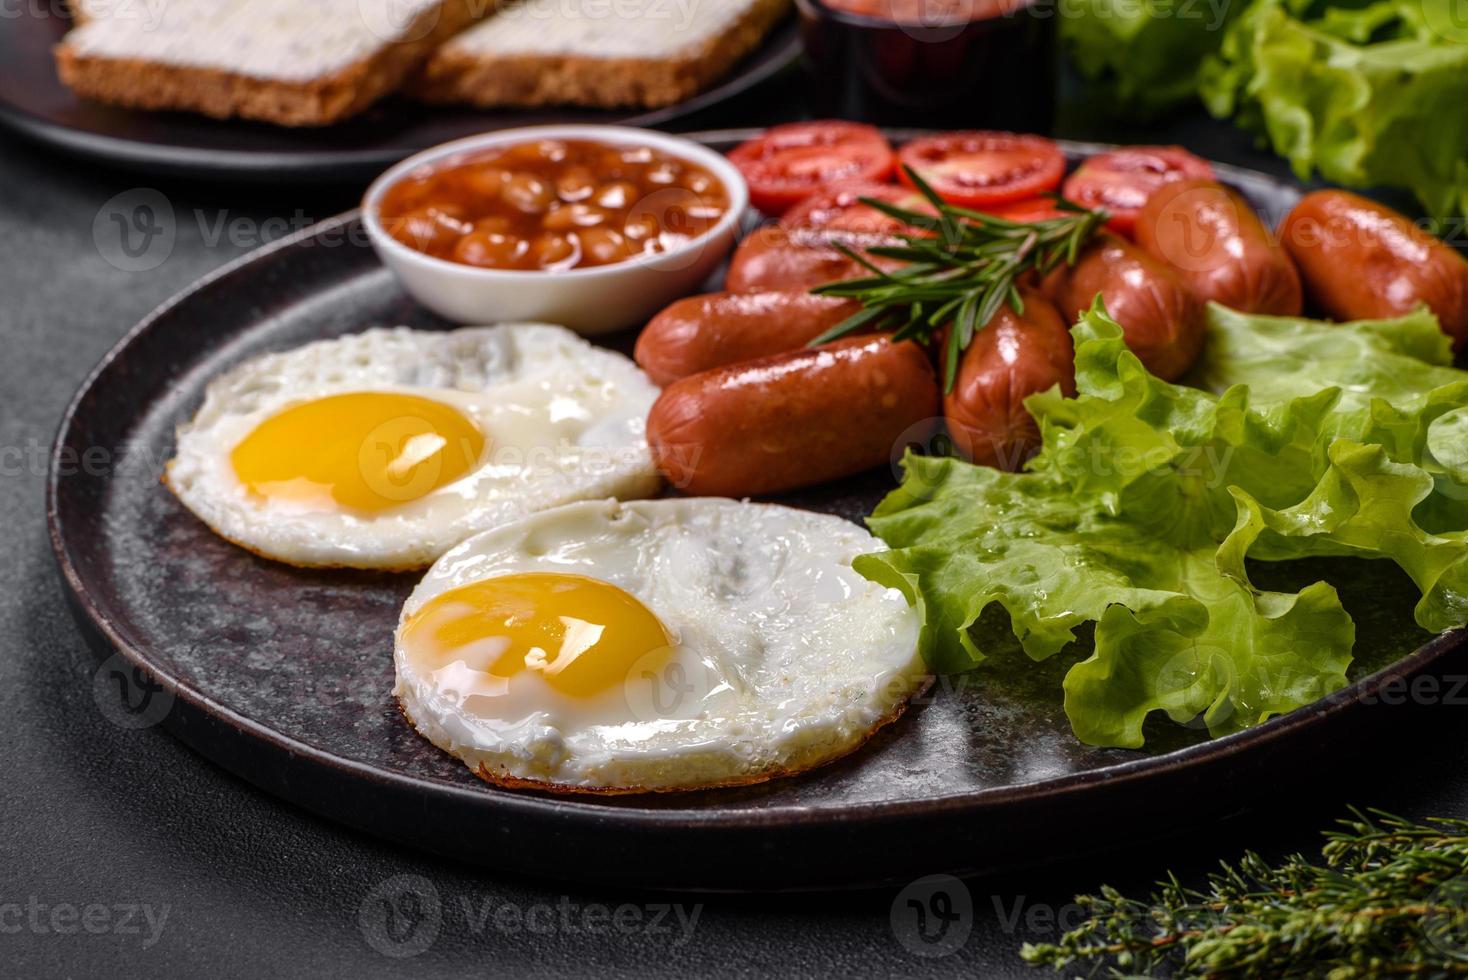 café da manhã inglês tradicional com ovos, torradas, salsichas, feijão, especiarias e ervas em um prato de cerâmica cinza foto